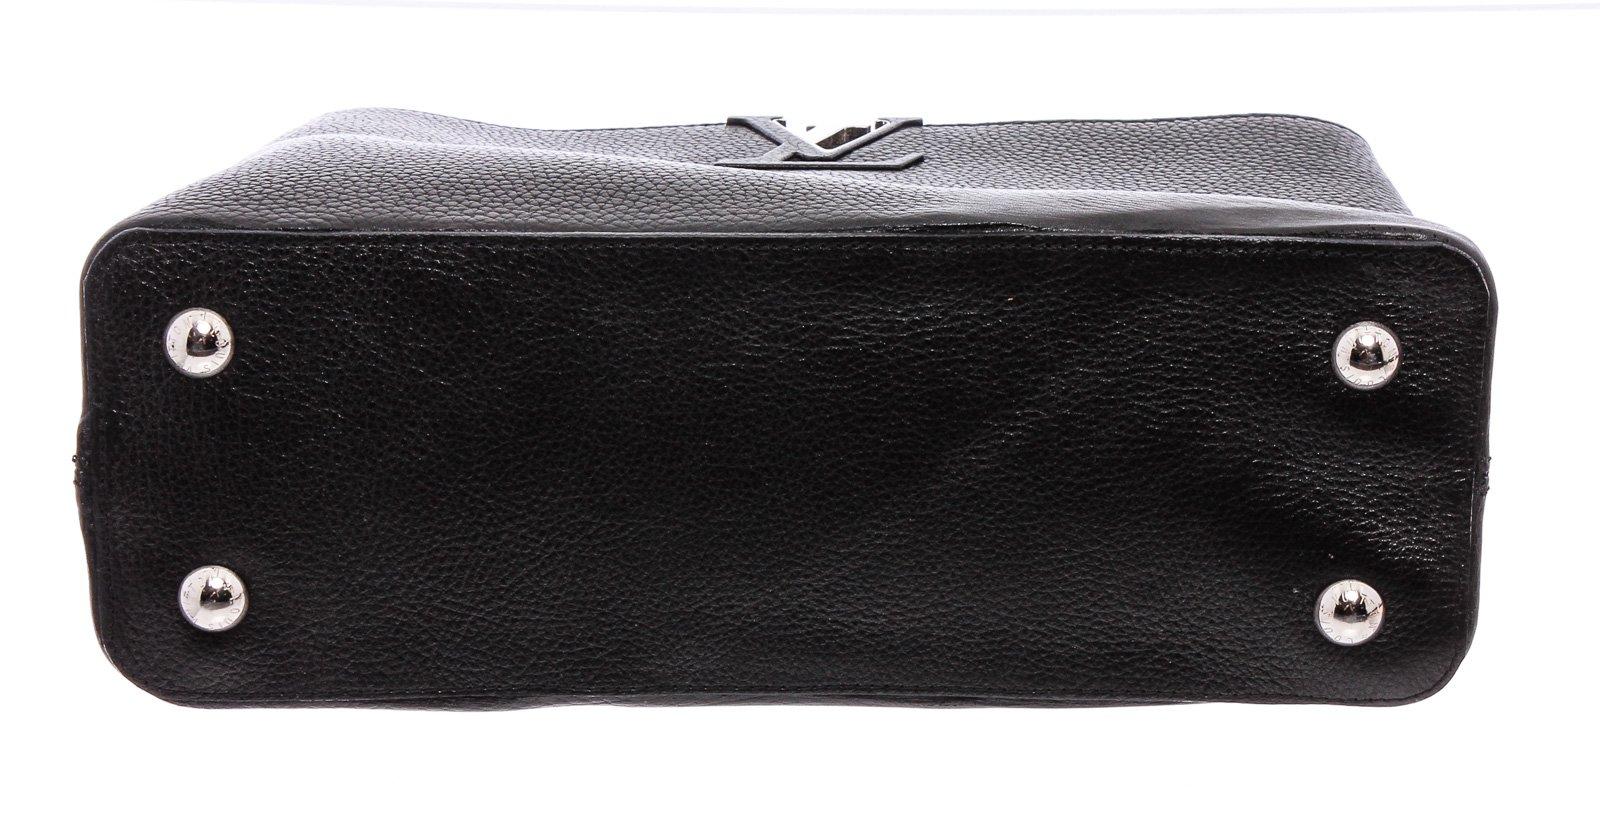  Louis Vuitton Black Taurillon Leather Capucines PM 1